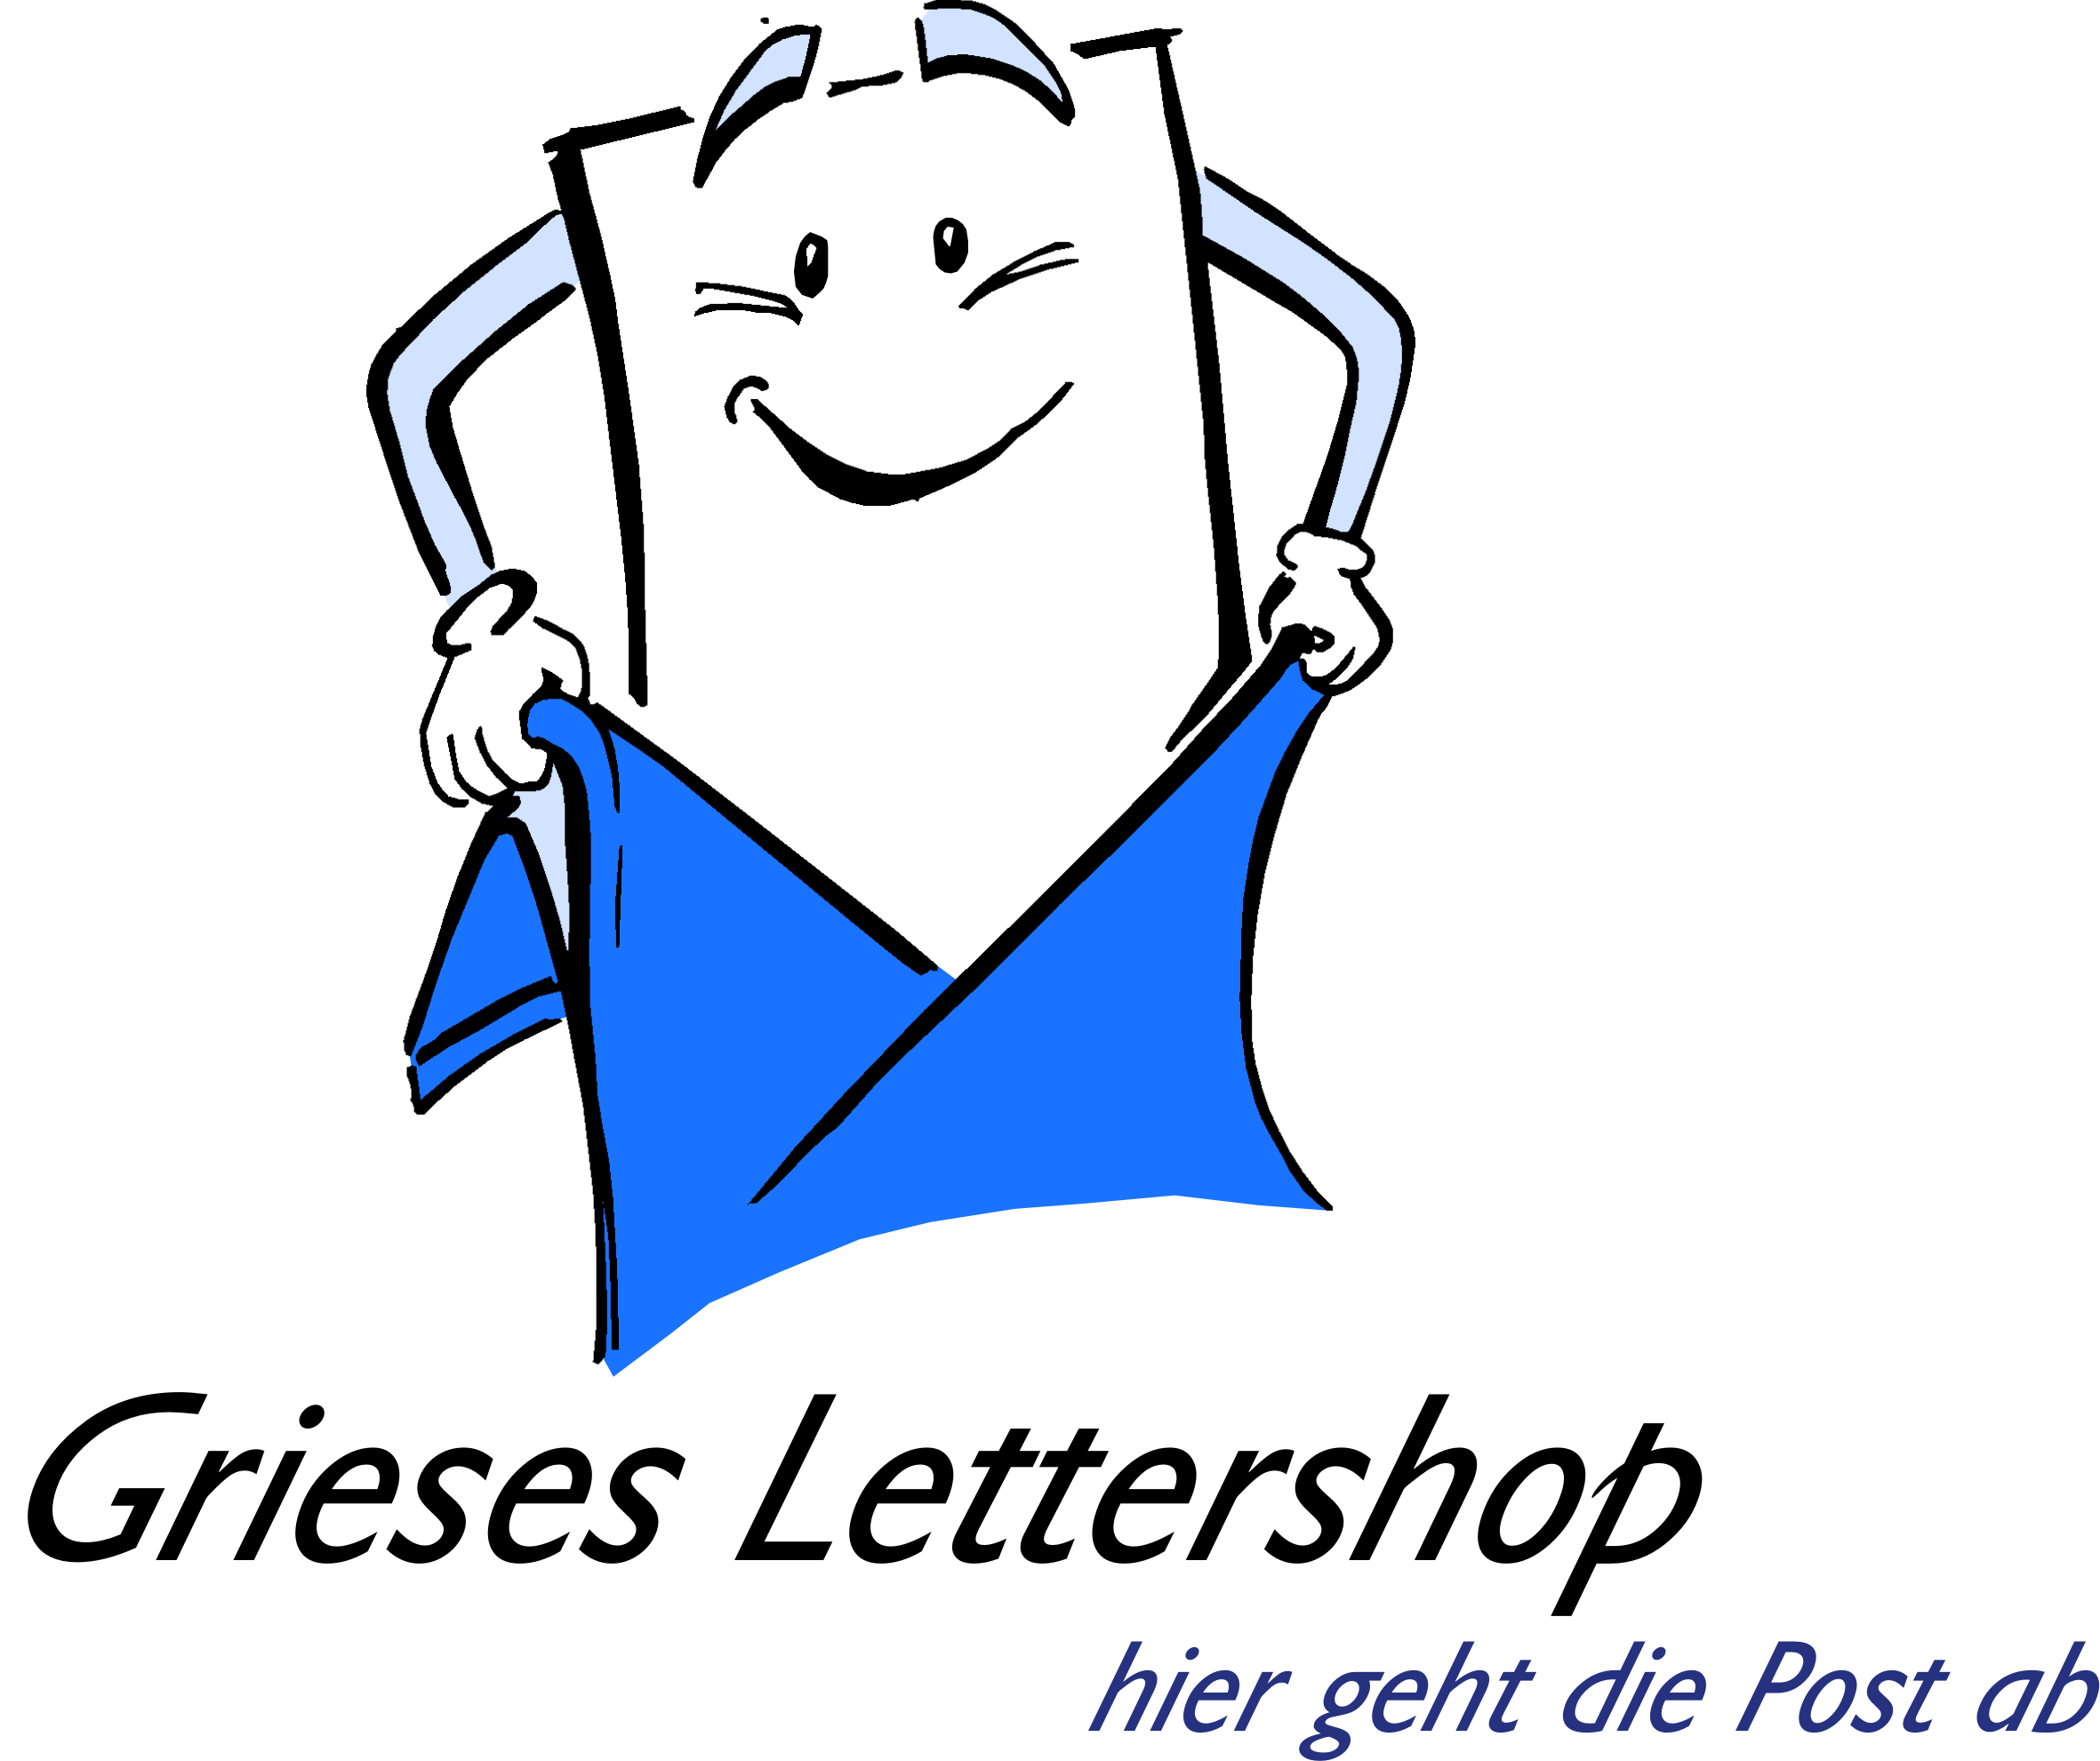 Grieses Lettershop